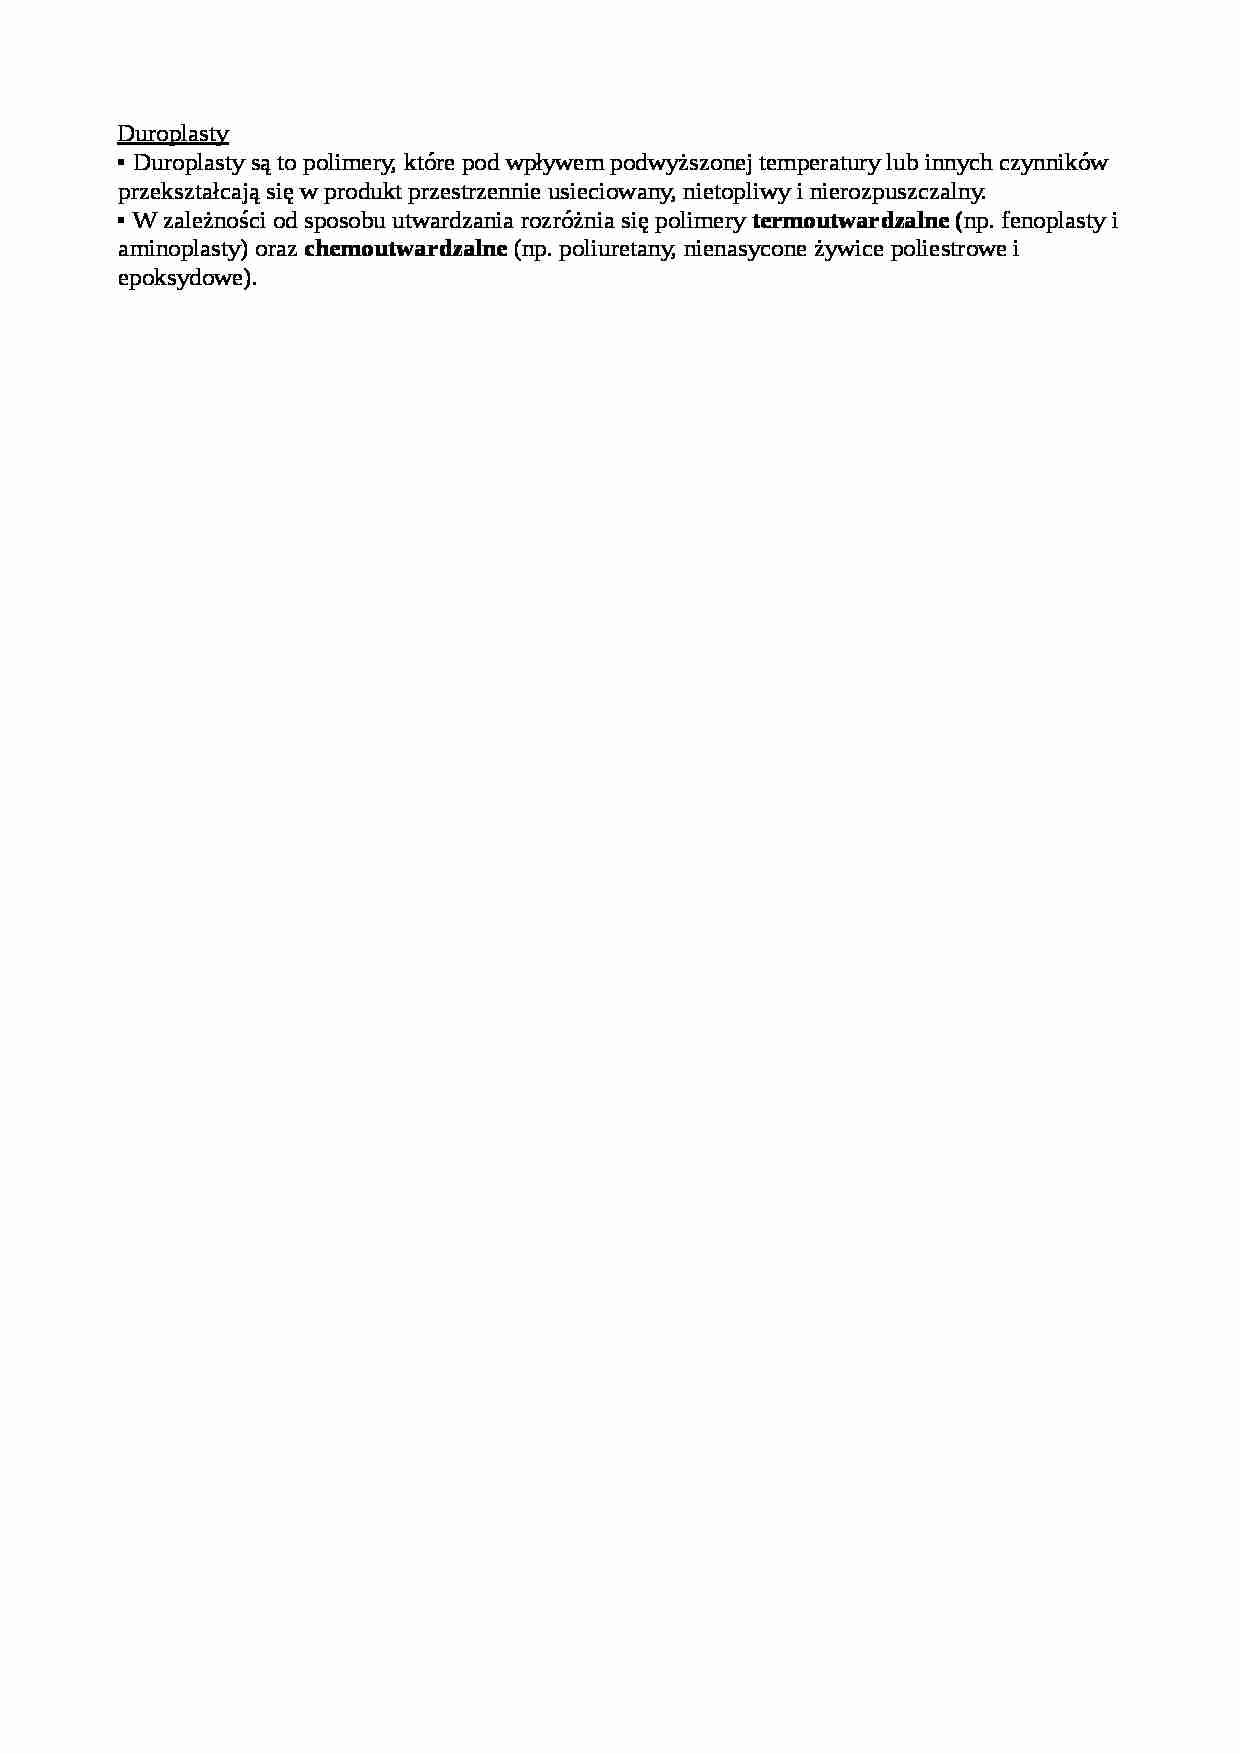 Duroplasty - wiadomości ogólne  - strona 1